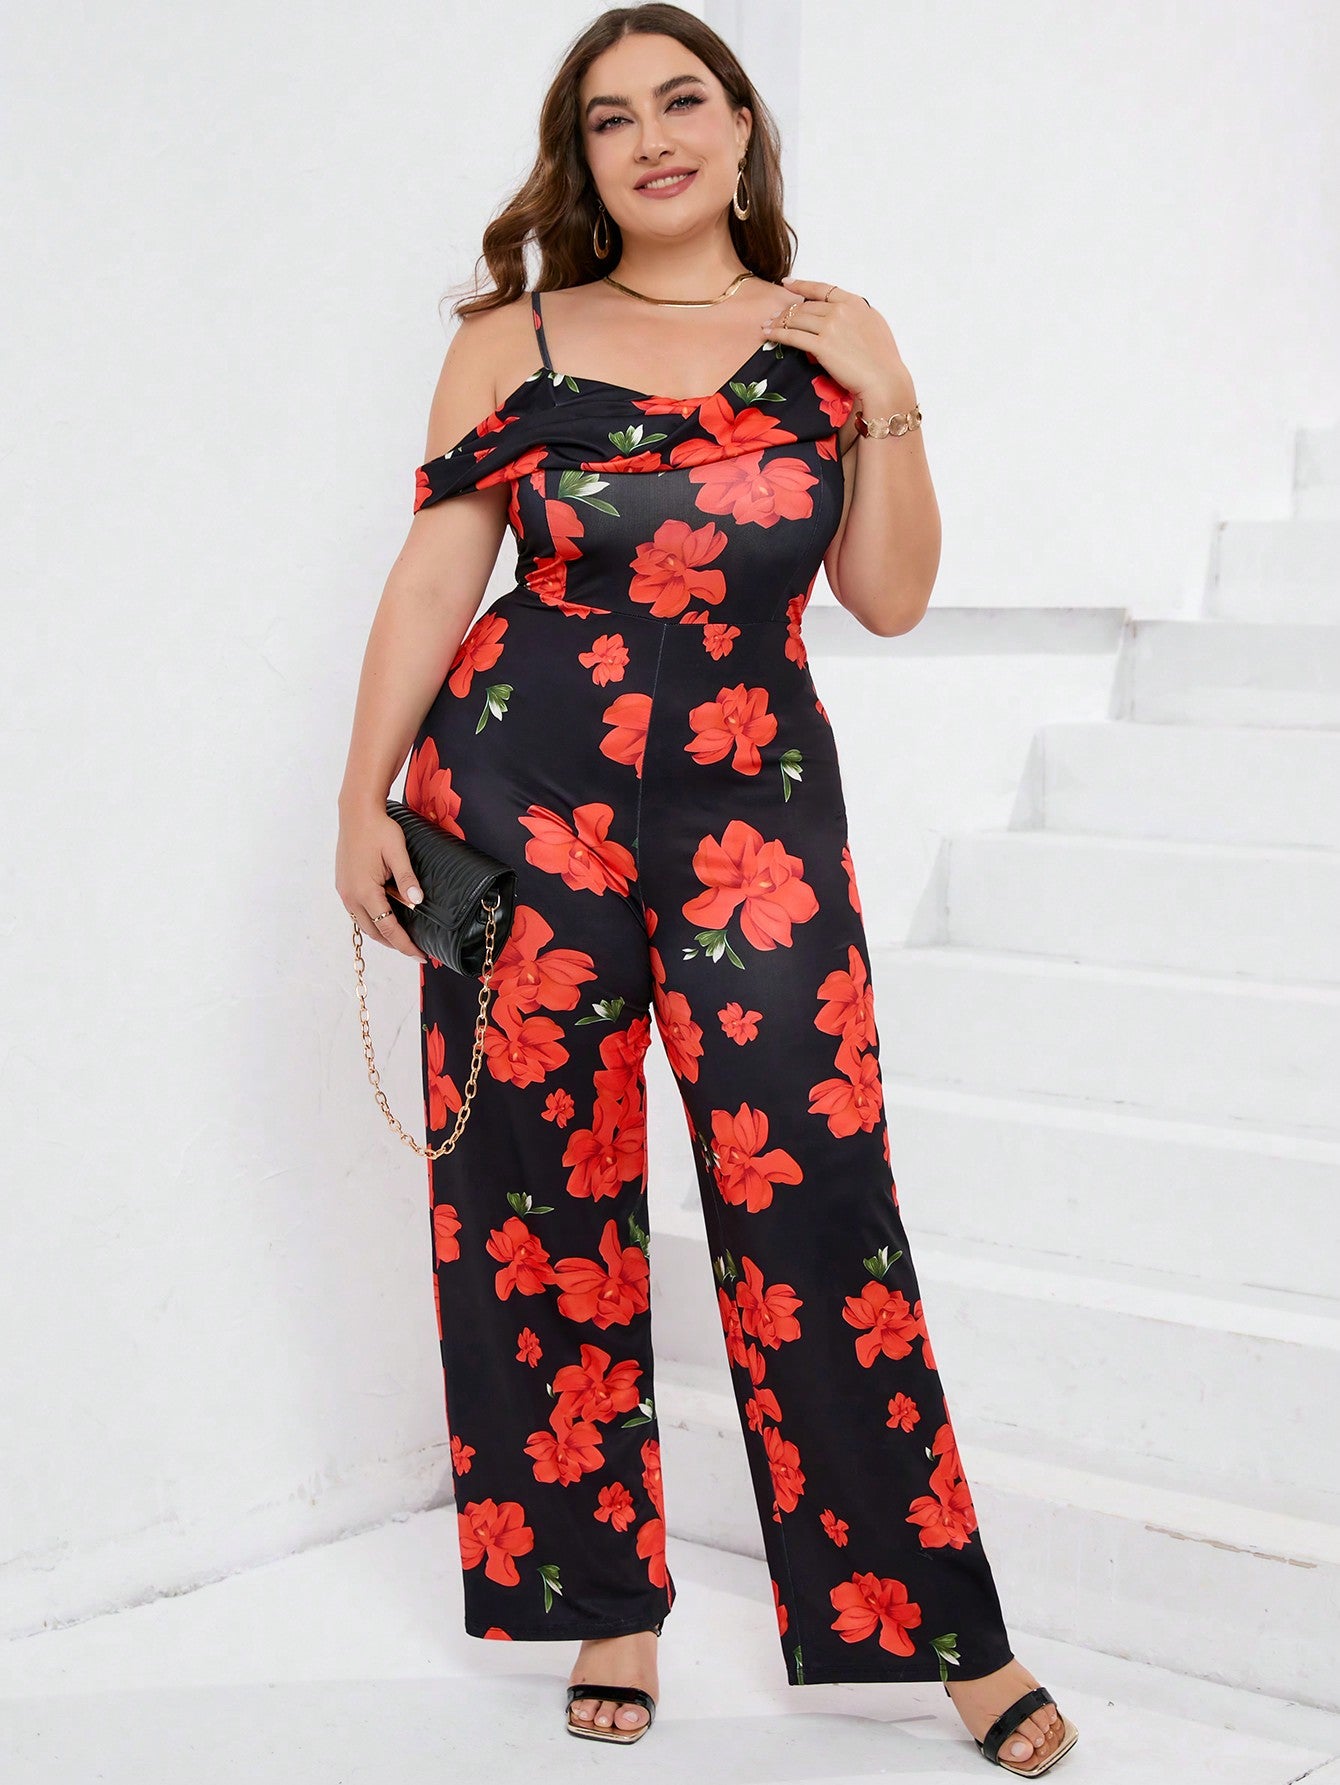 Chic Plus Size Black Floral Print Jumpsuit with Shoulder Detail